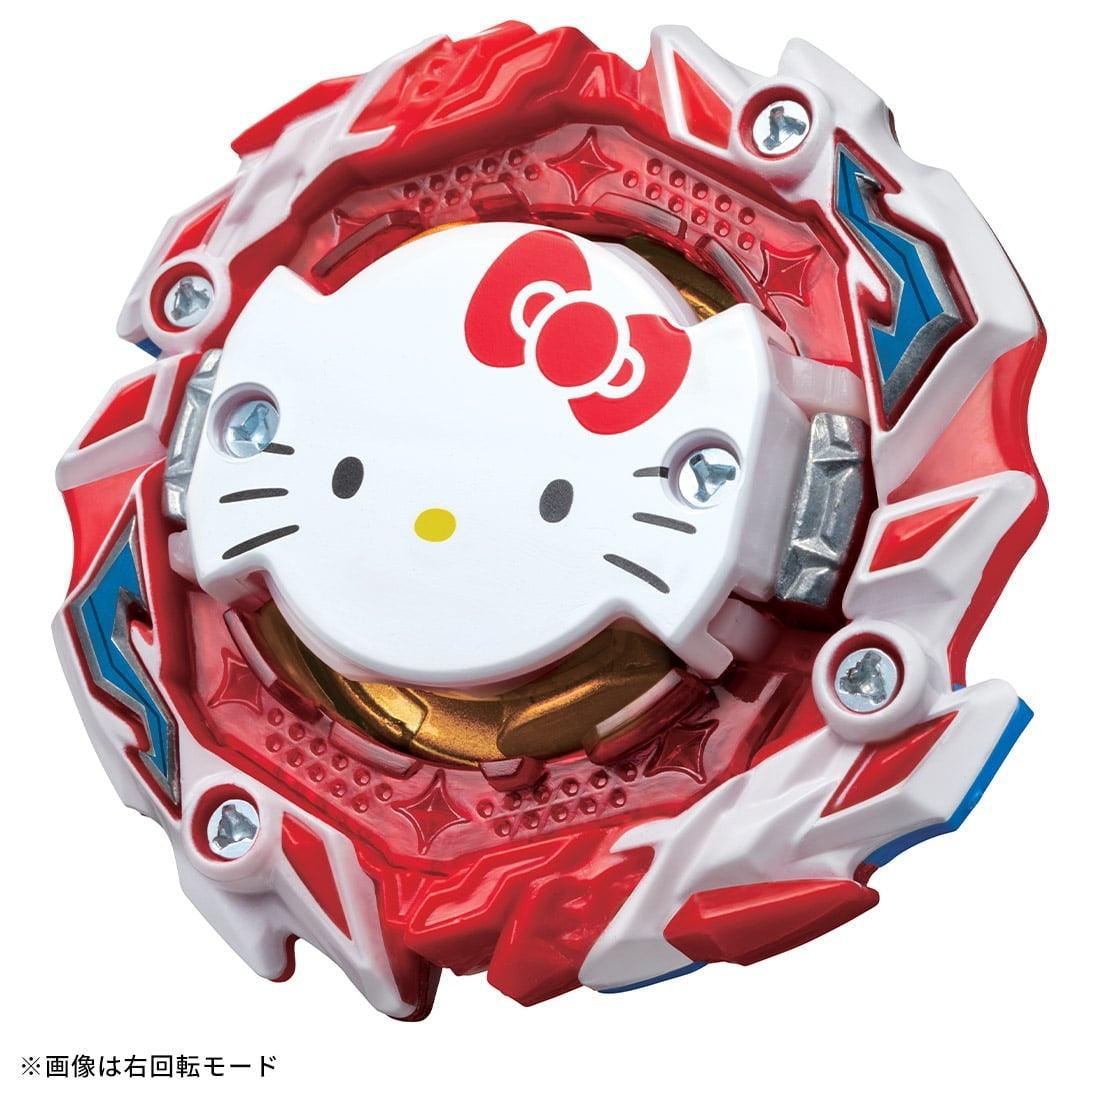 Takara Tomy Beyblade Hello Kitty Burst B-00 Booster Astral Ov.R'-0 - n4ytcg